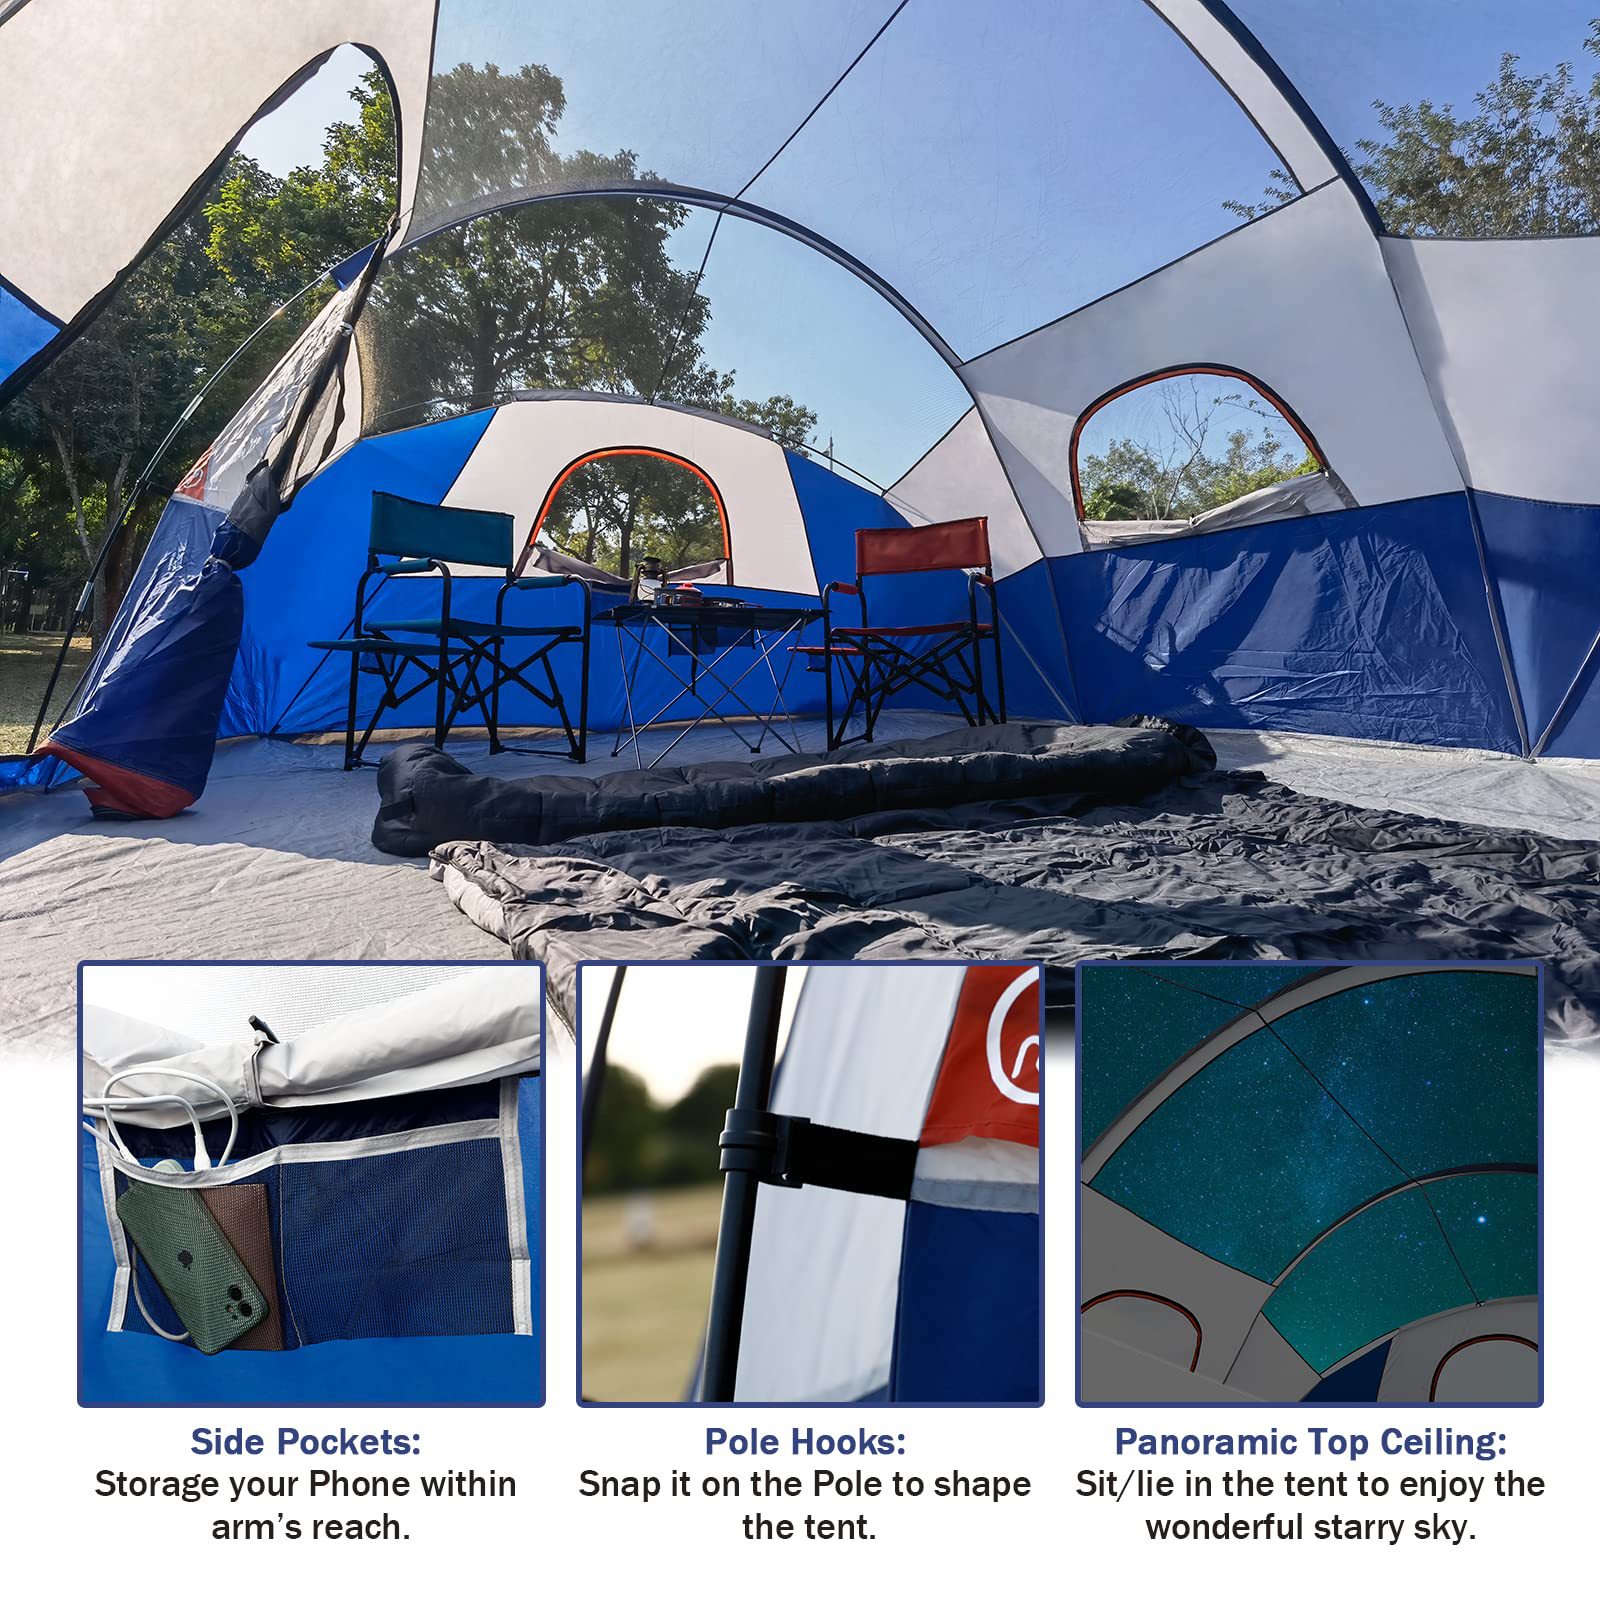 Telt-8-personers-campingtelte, vandtæt vindtæt familietelt, 5 store netvinduer, dobbeltlag, opdelt gardin til adskilt rum, bærbar med bæretaske